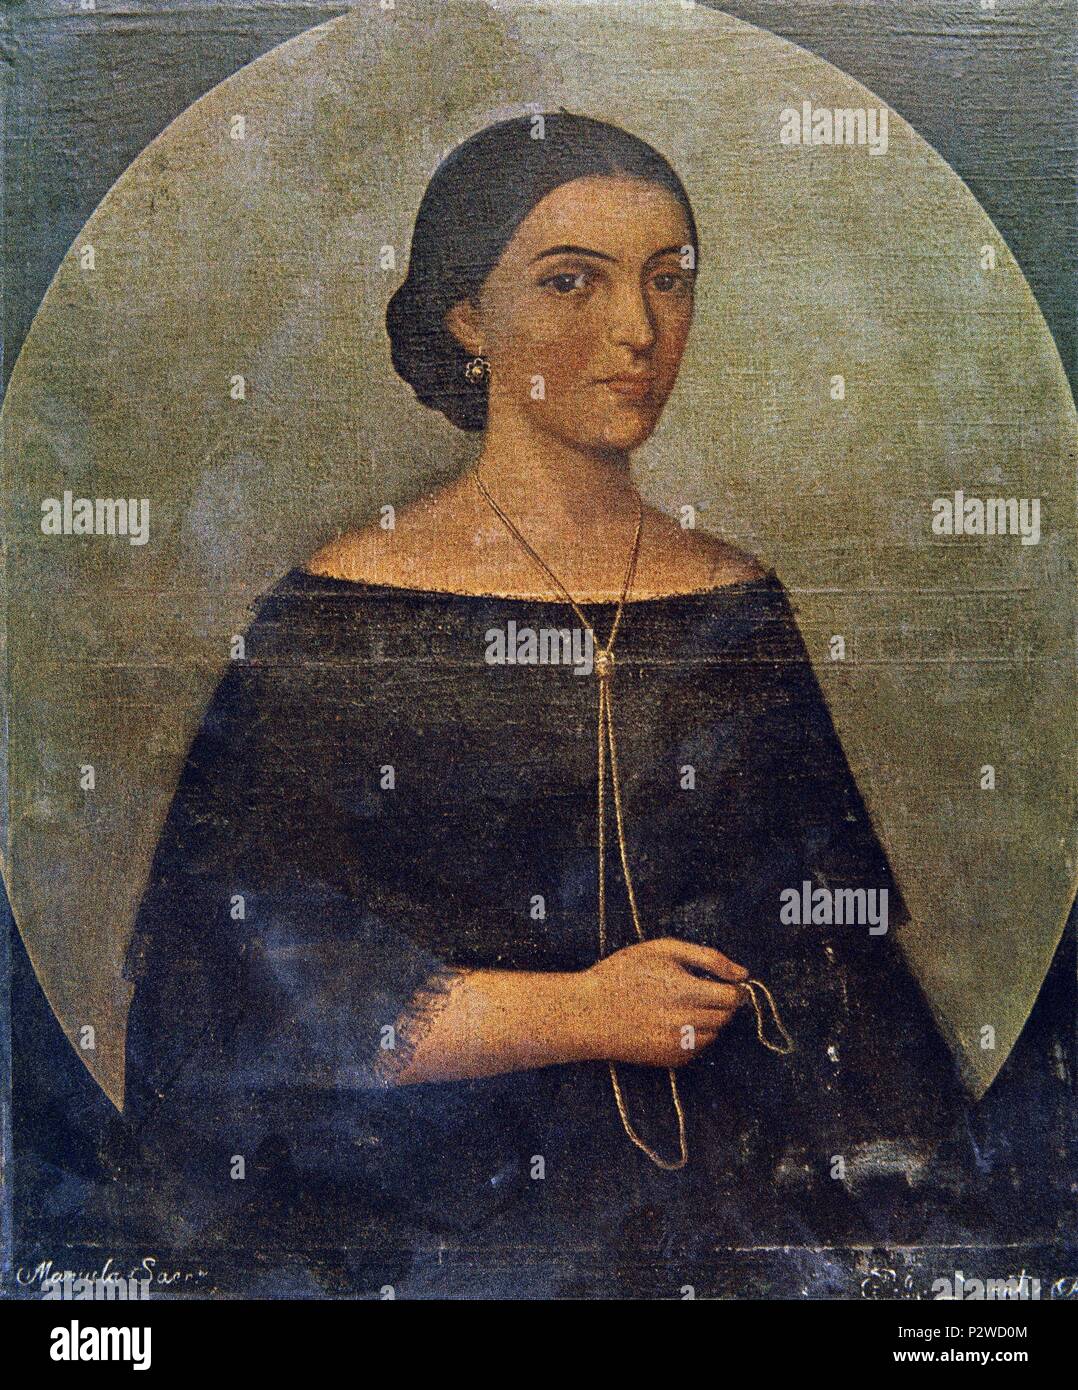 Portrait von Manuela Saenz, zweite Ehefrau von Simon Bolivar (1790-1830), General und Politiker aus Südamerika. Madrid, Institut für Lateinamerikanische Zusammenarbeit. Ort: INSTITUTO DE COOPERACION IBEROAMERICANA, MADRID, SPANIEN. Stockfoto